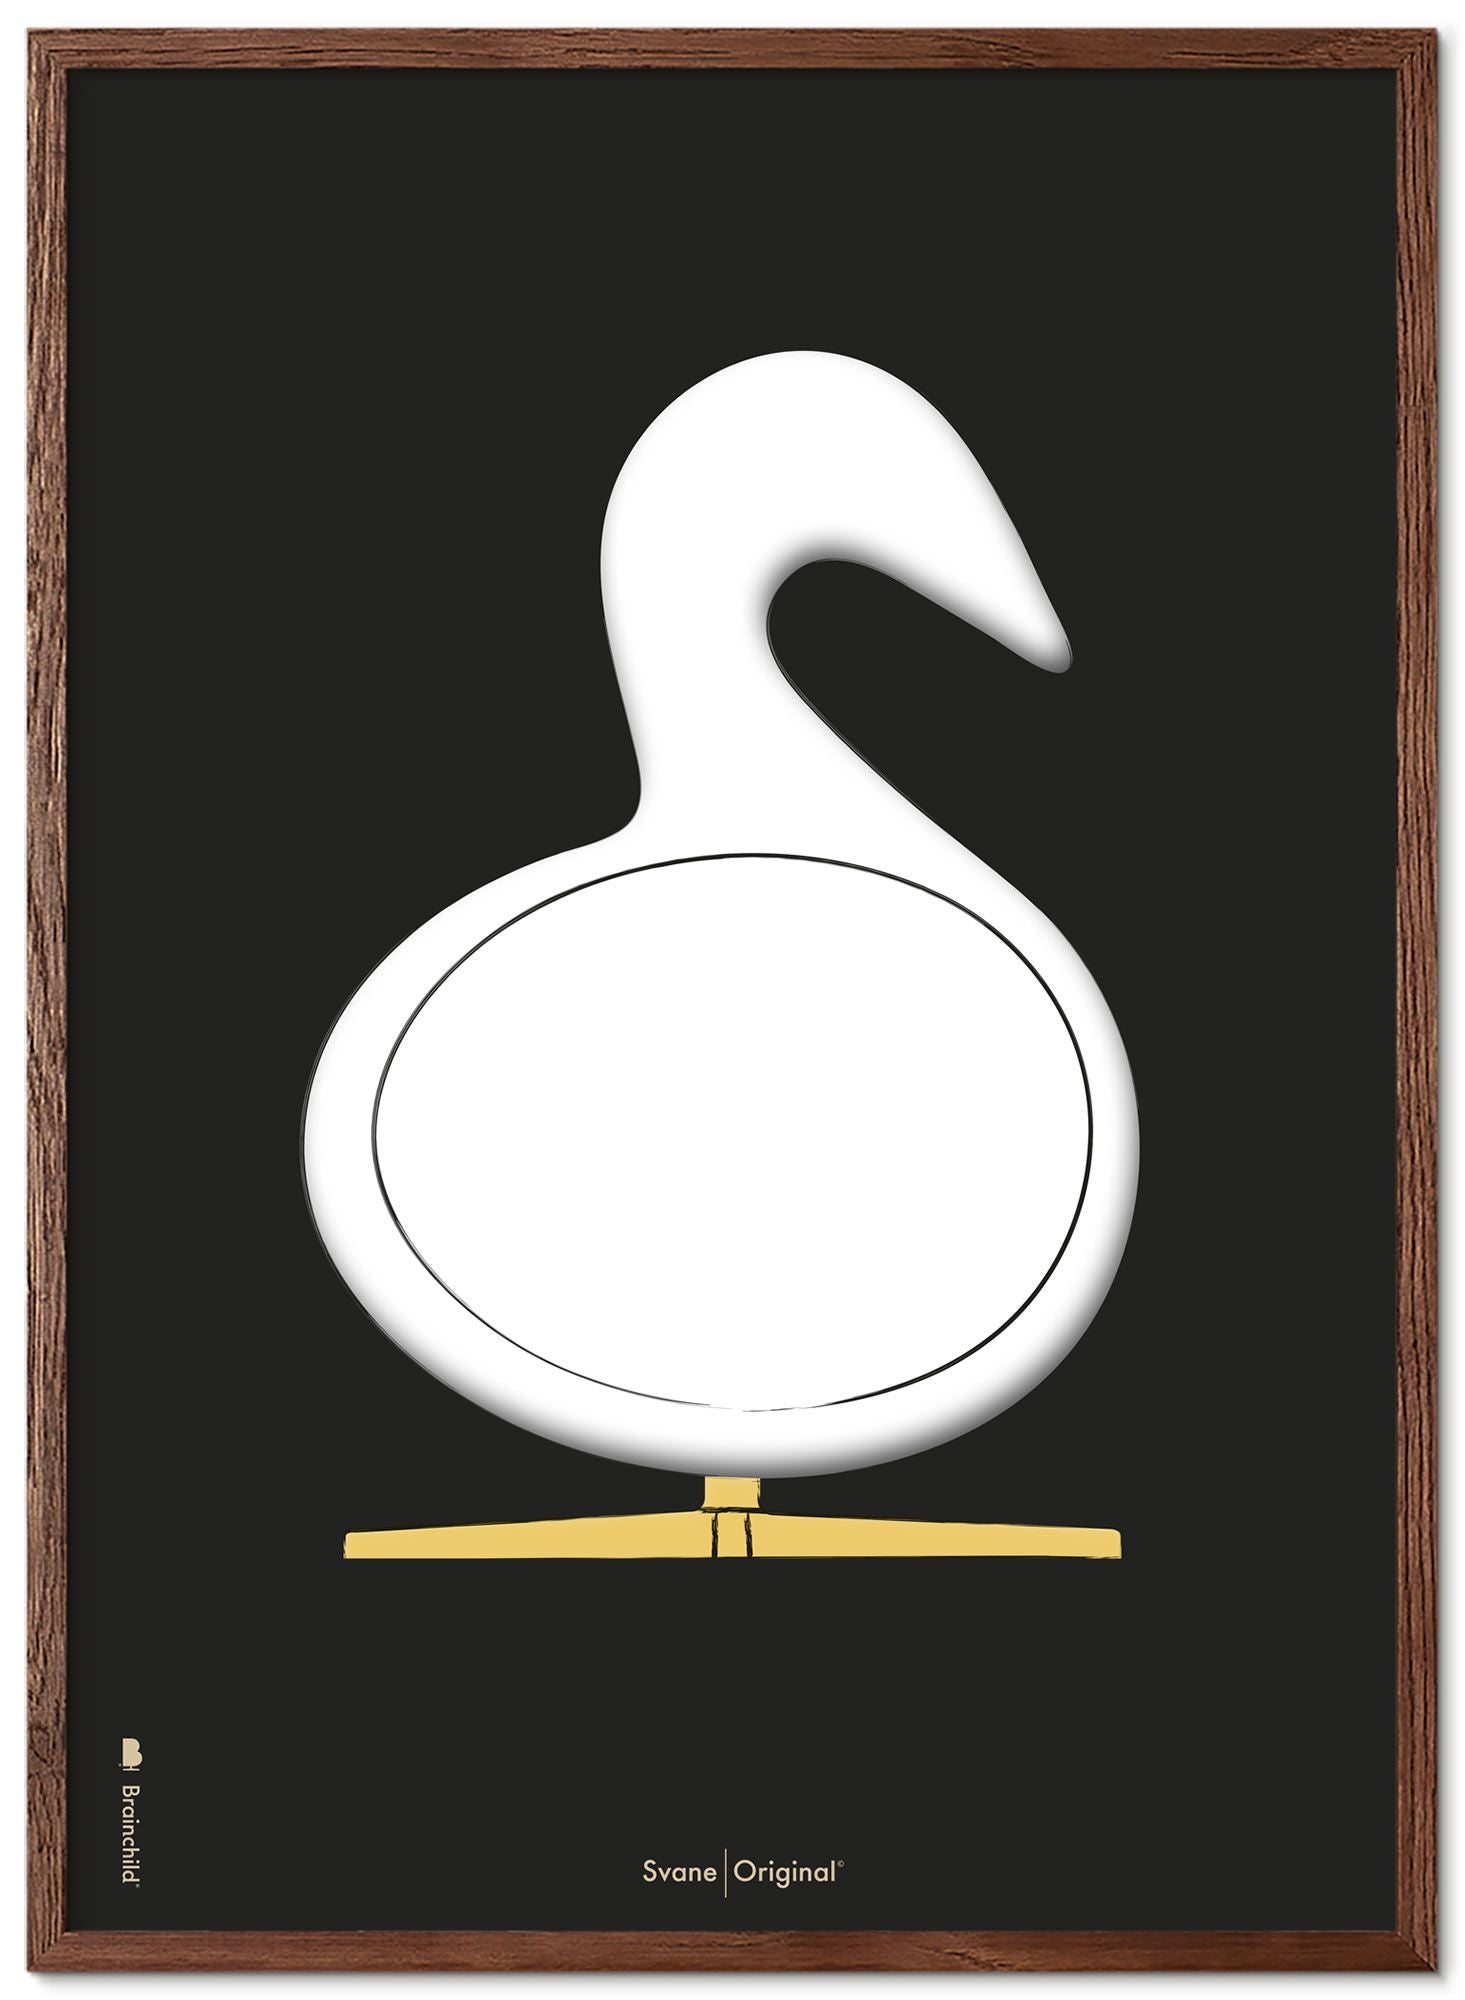 Marco de póster de boceto de diseño de Swan de creación hecha de madera oscura A5, fondo negro